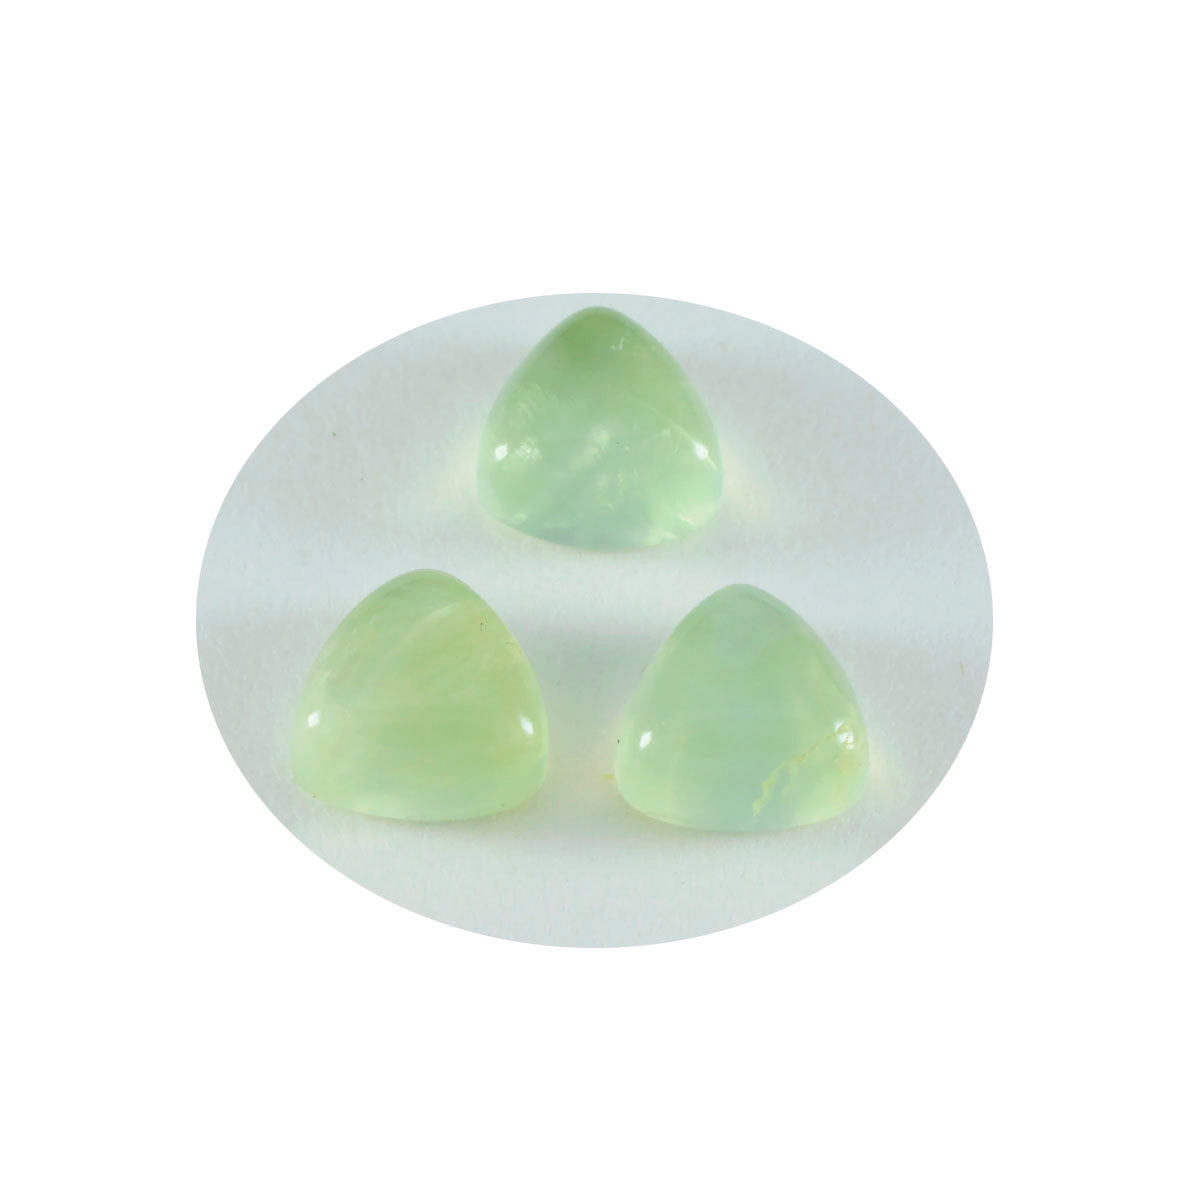 Riyogems 1 pieza cabujón de prehnita verde 15x15 mm forma de billón gema de excelente calidad